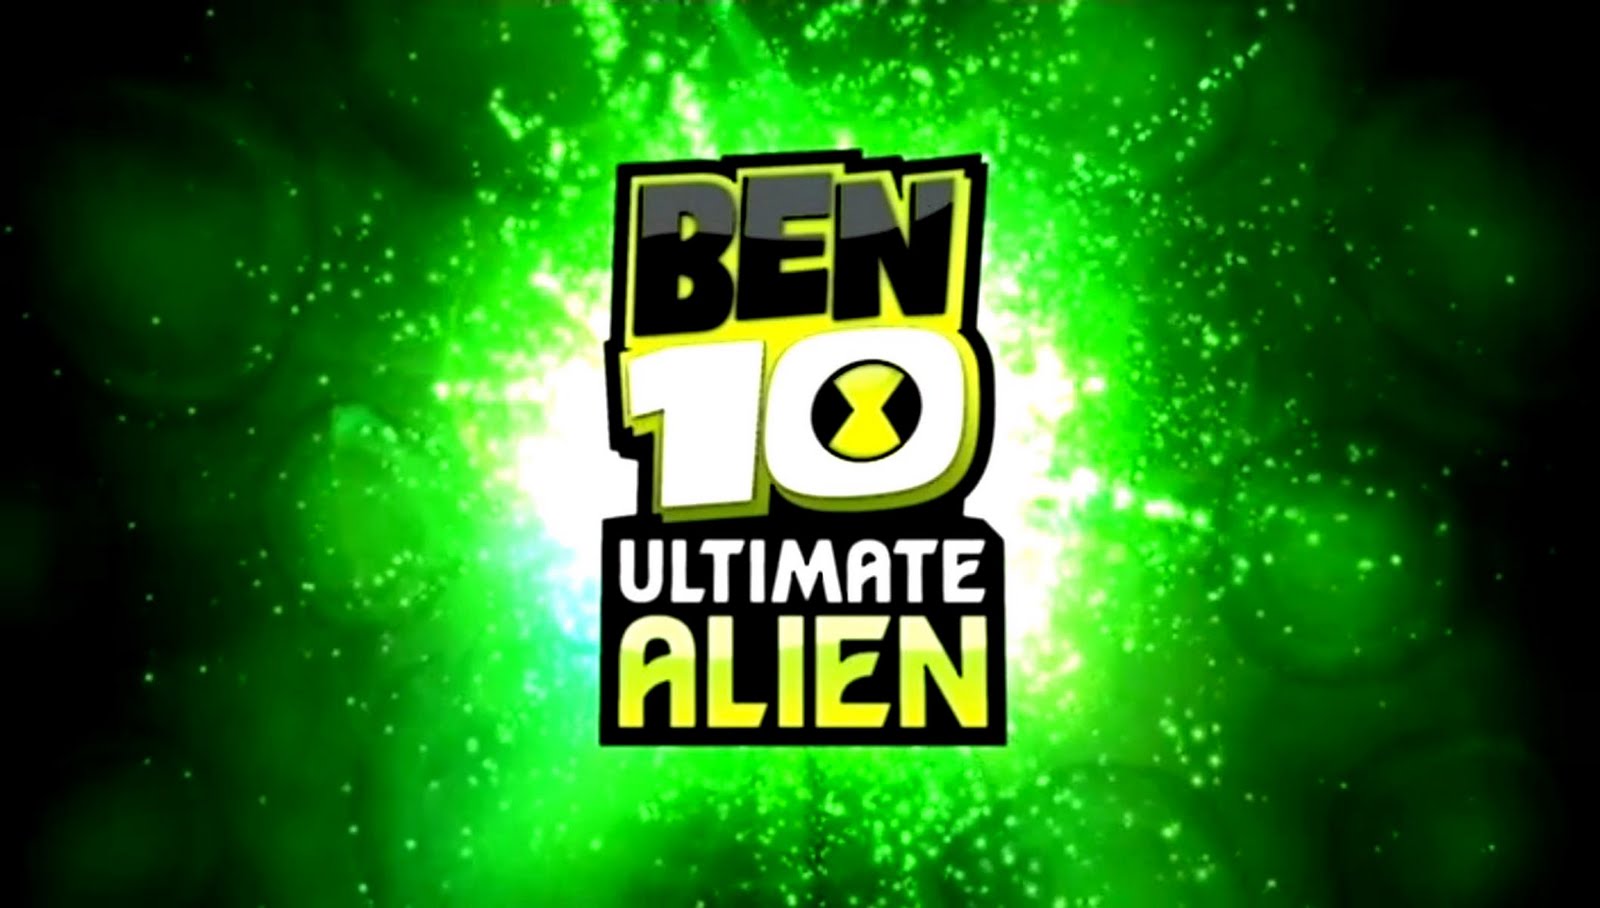 Ben 10: Ultimate Alien Wallpapers